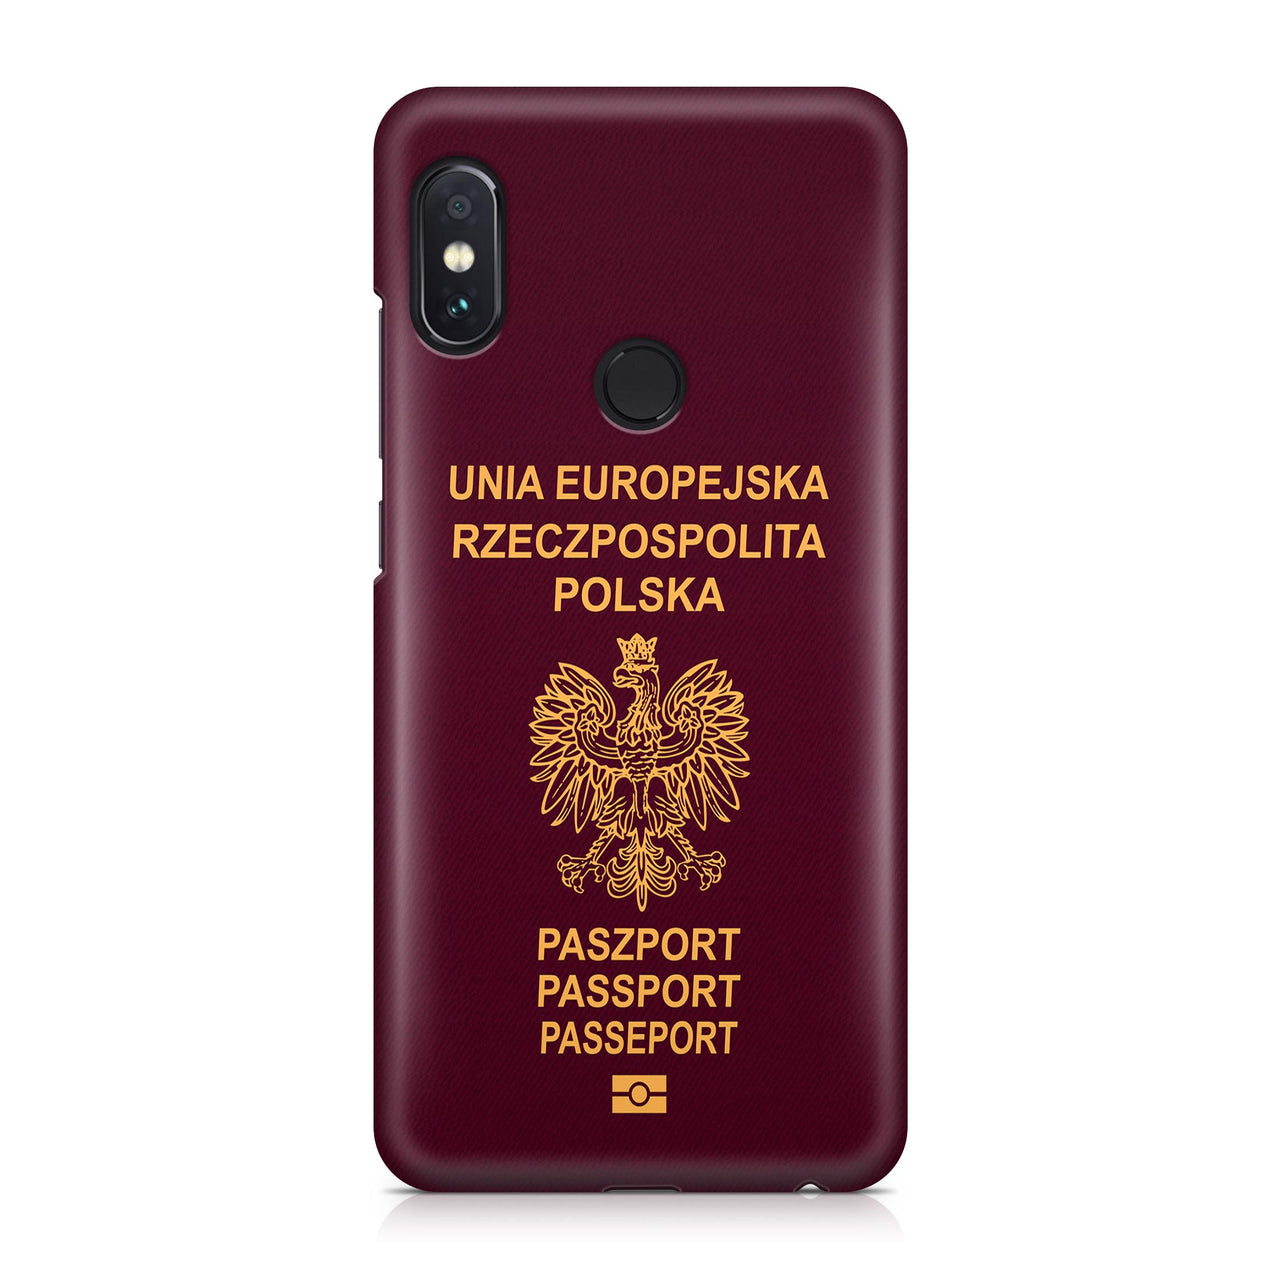 Polish Passport Designed Xiaomi Cases